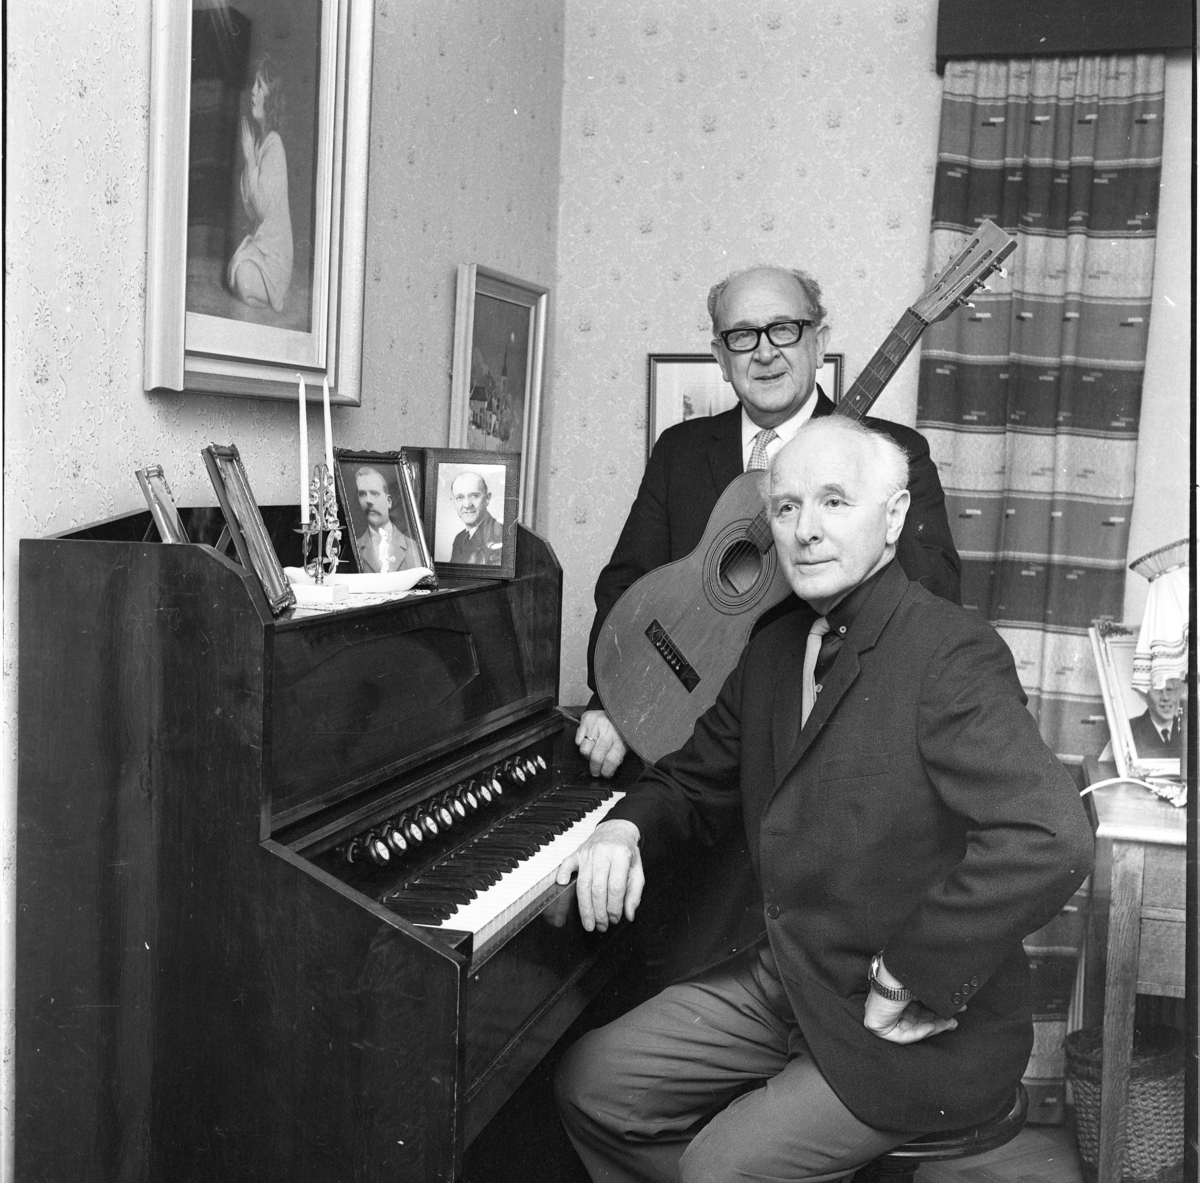 Carl Öst i glasögon står med en gitarr intill Martin Persson som sitter vid en orgel. På orgeln står en ljusstake med två ljus samt ramade porträttfotografier av män.